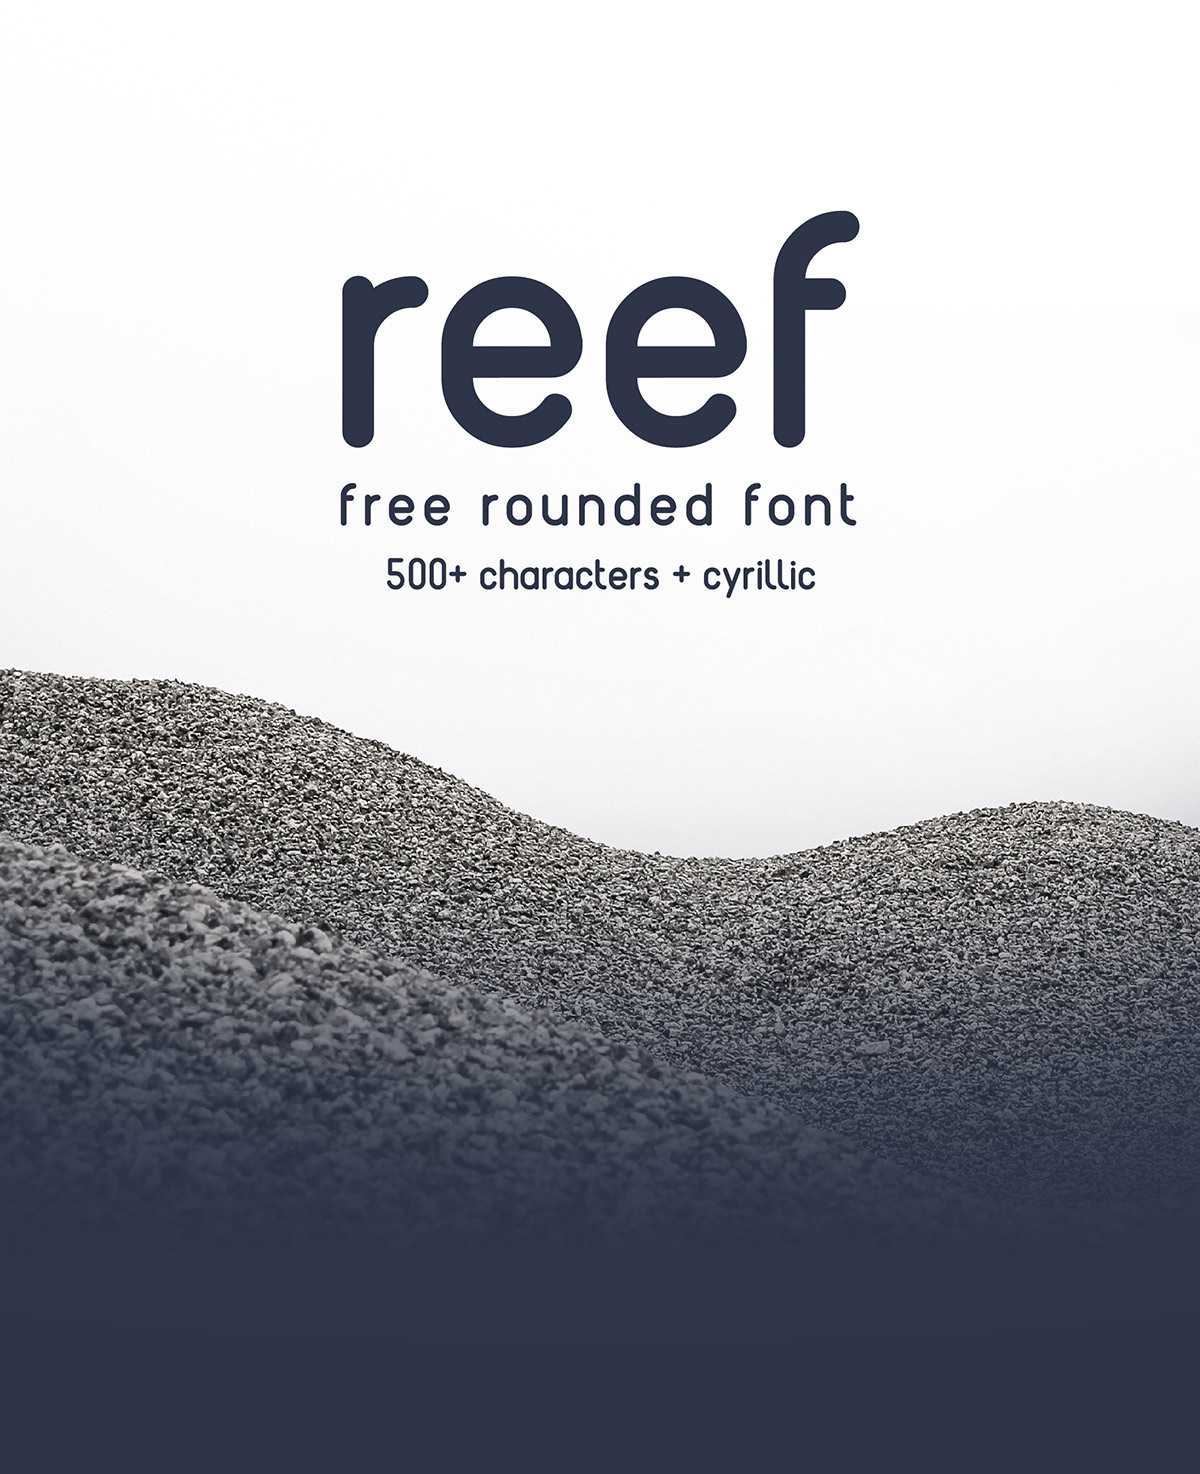 Reef Font